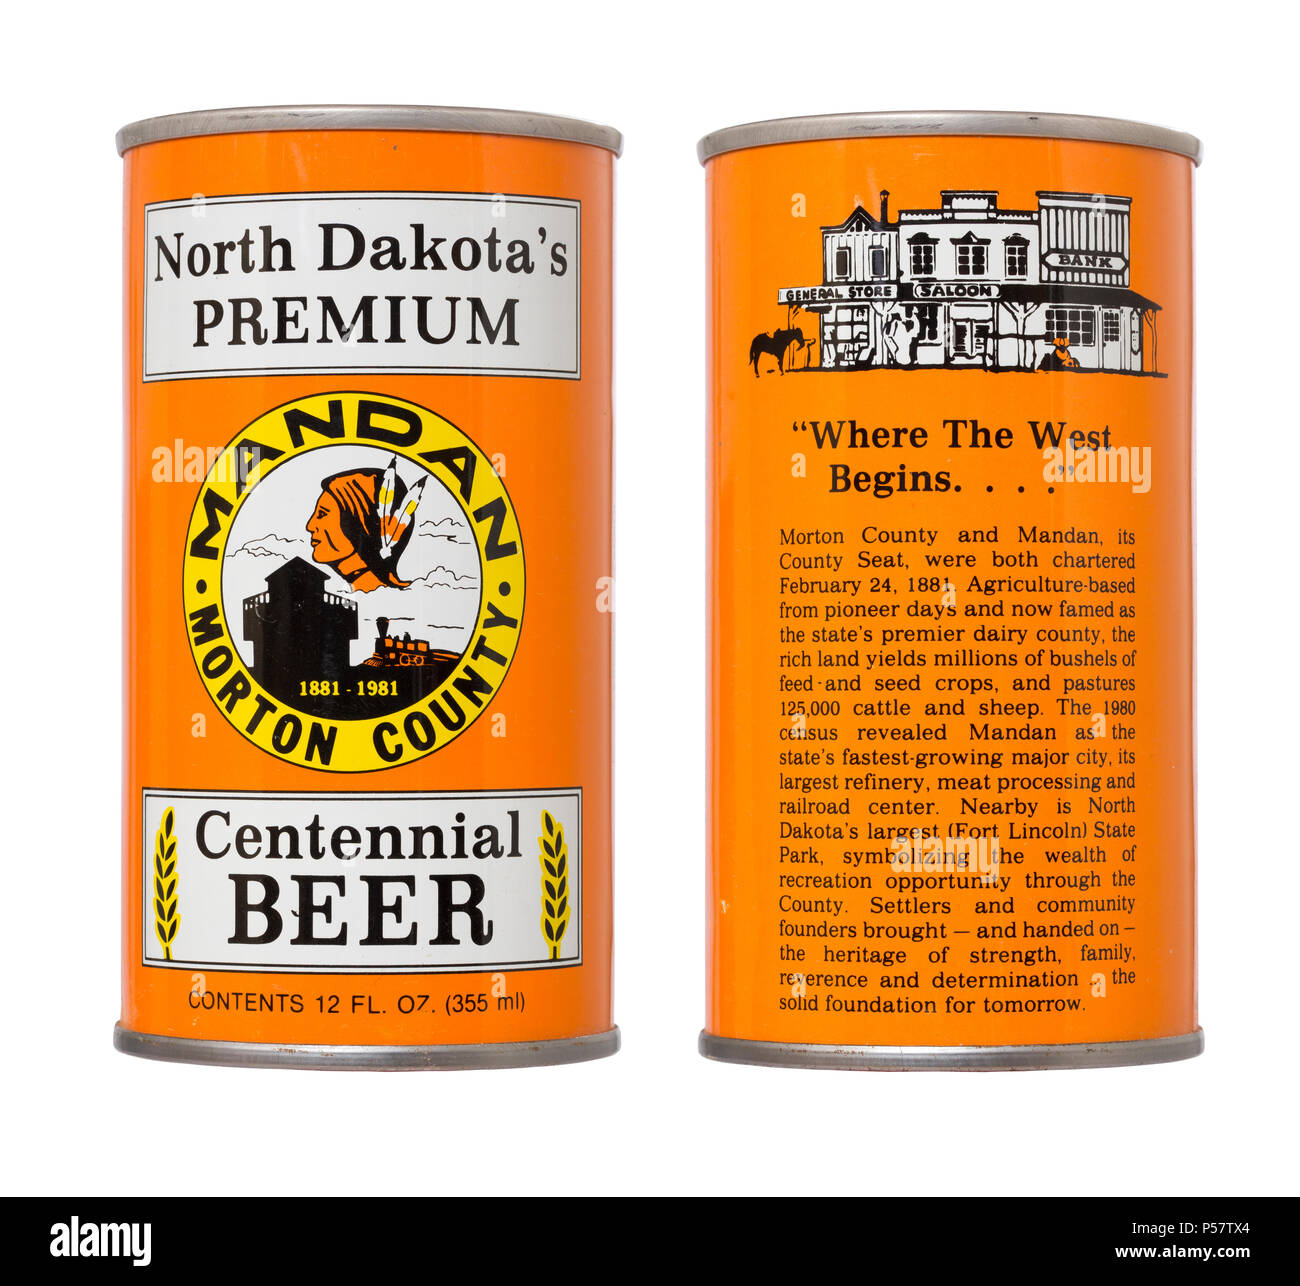 El anverso y el reverso de una lata de cerveza conmemorativa Mandan y Morton County, North Dakota's 1981 Celebración del Centenario. Foto de stock